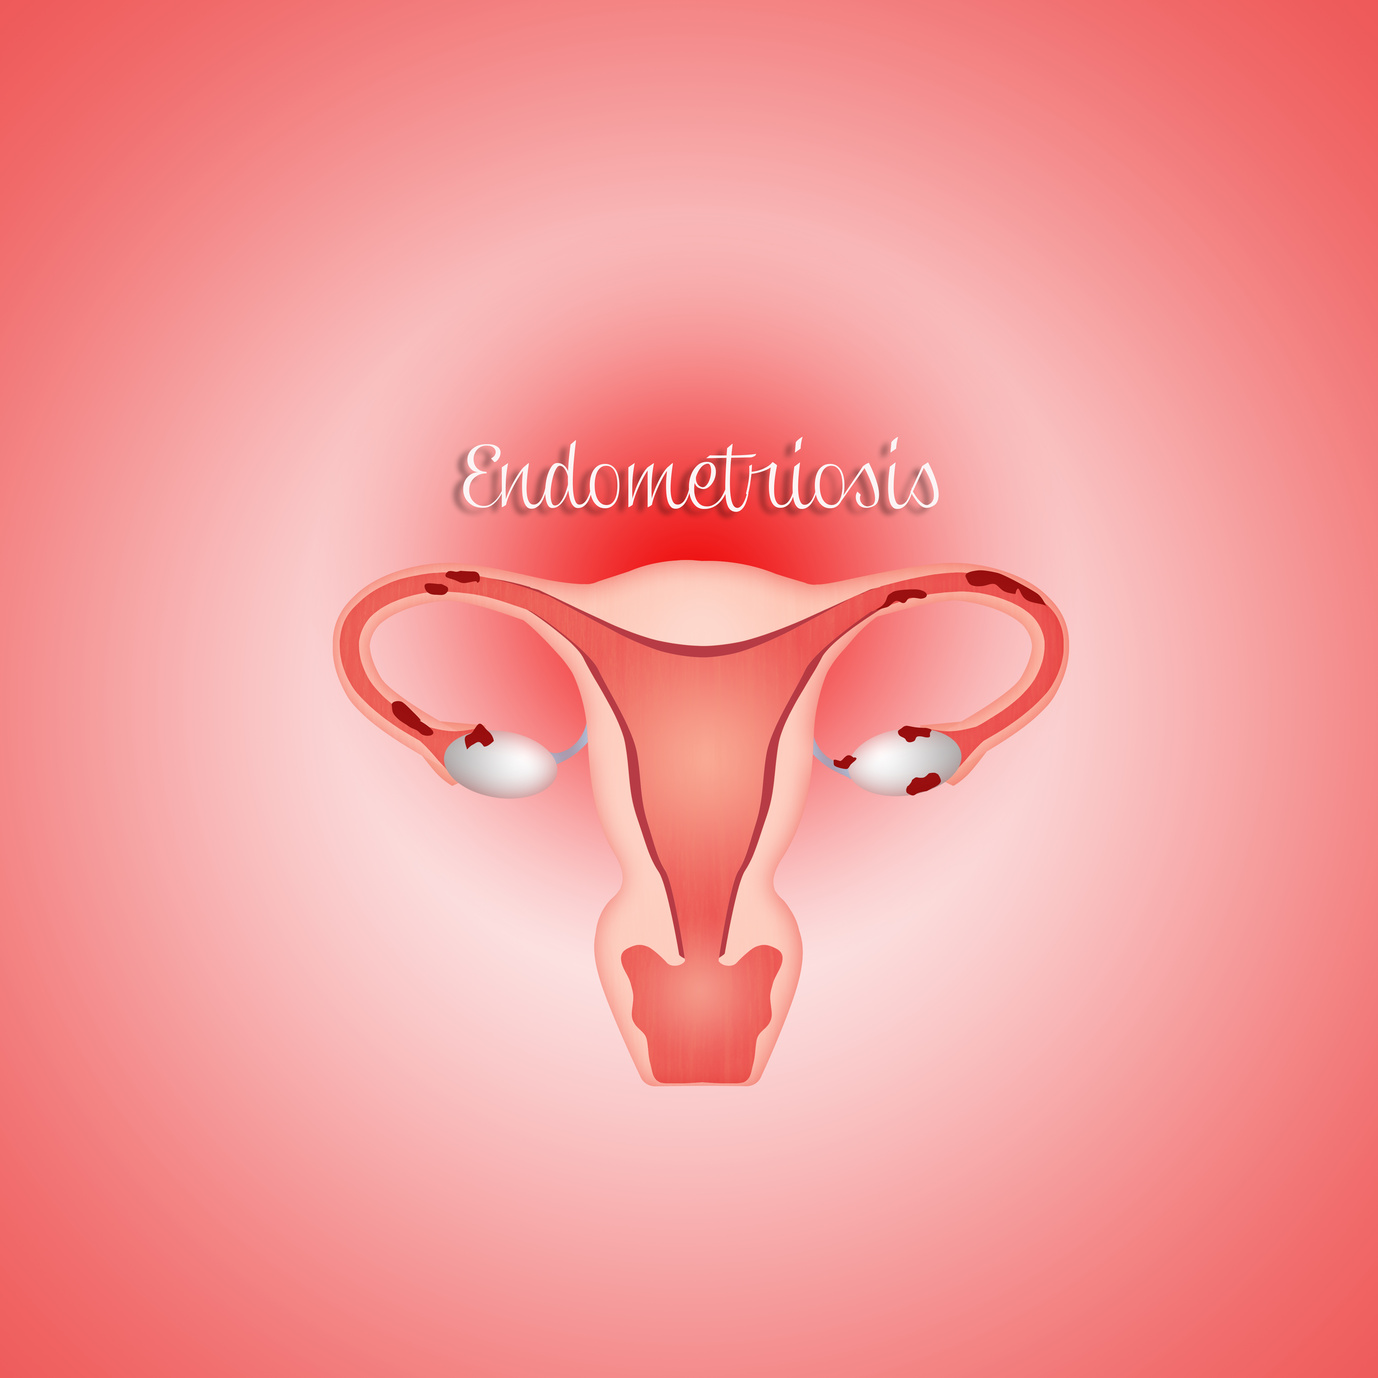 symptoms of endometriosis